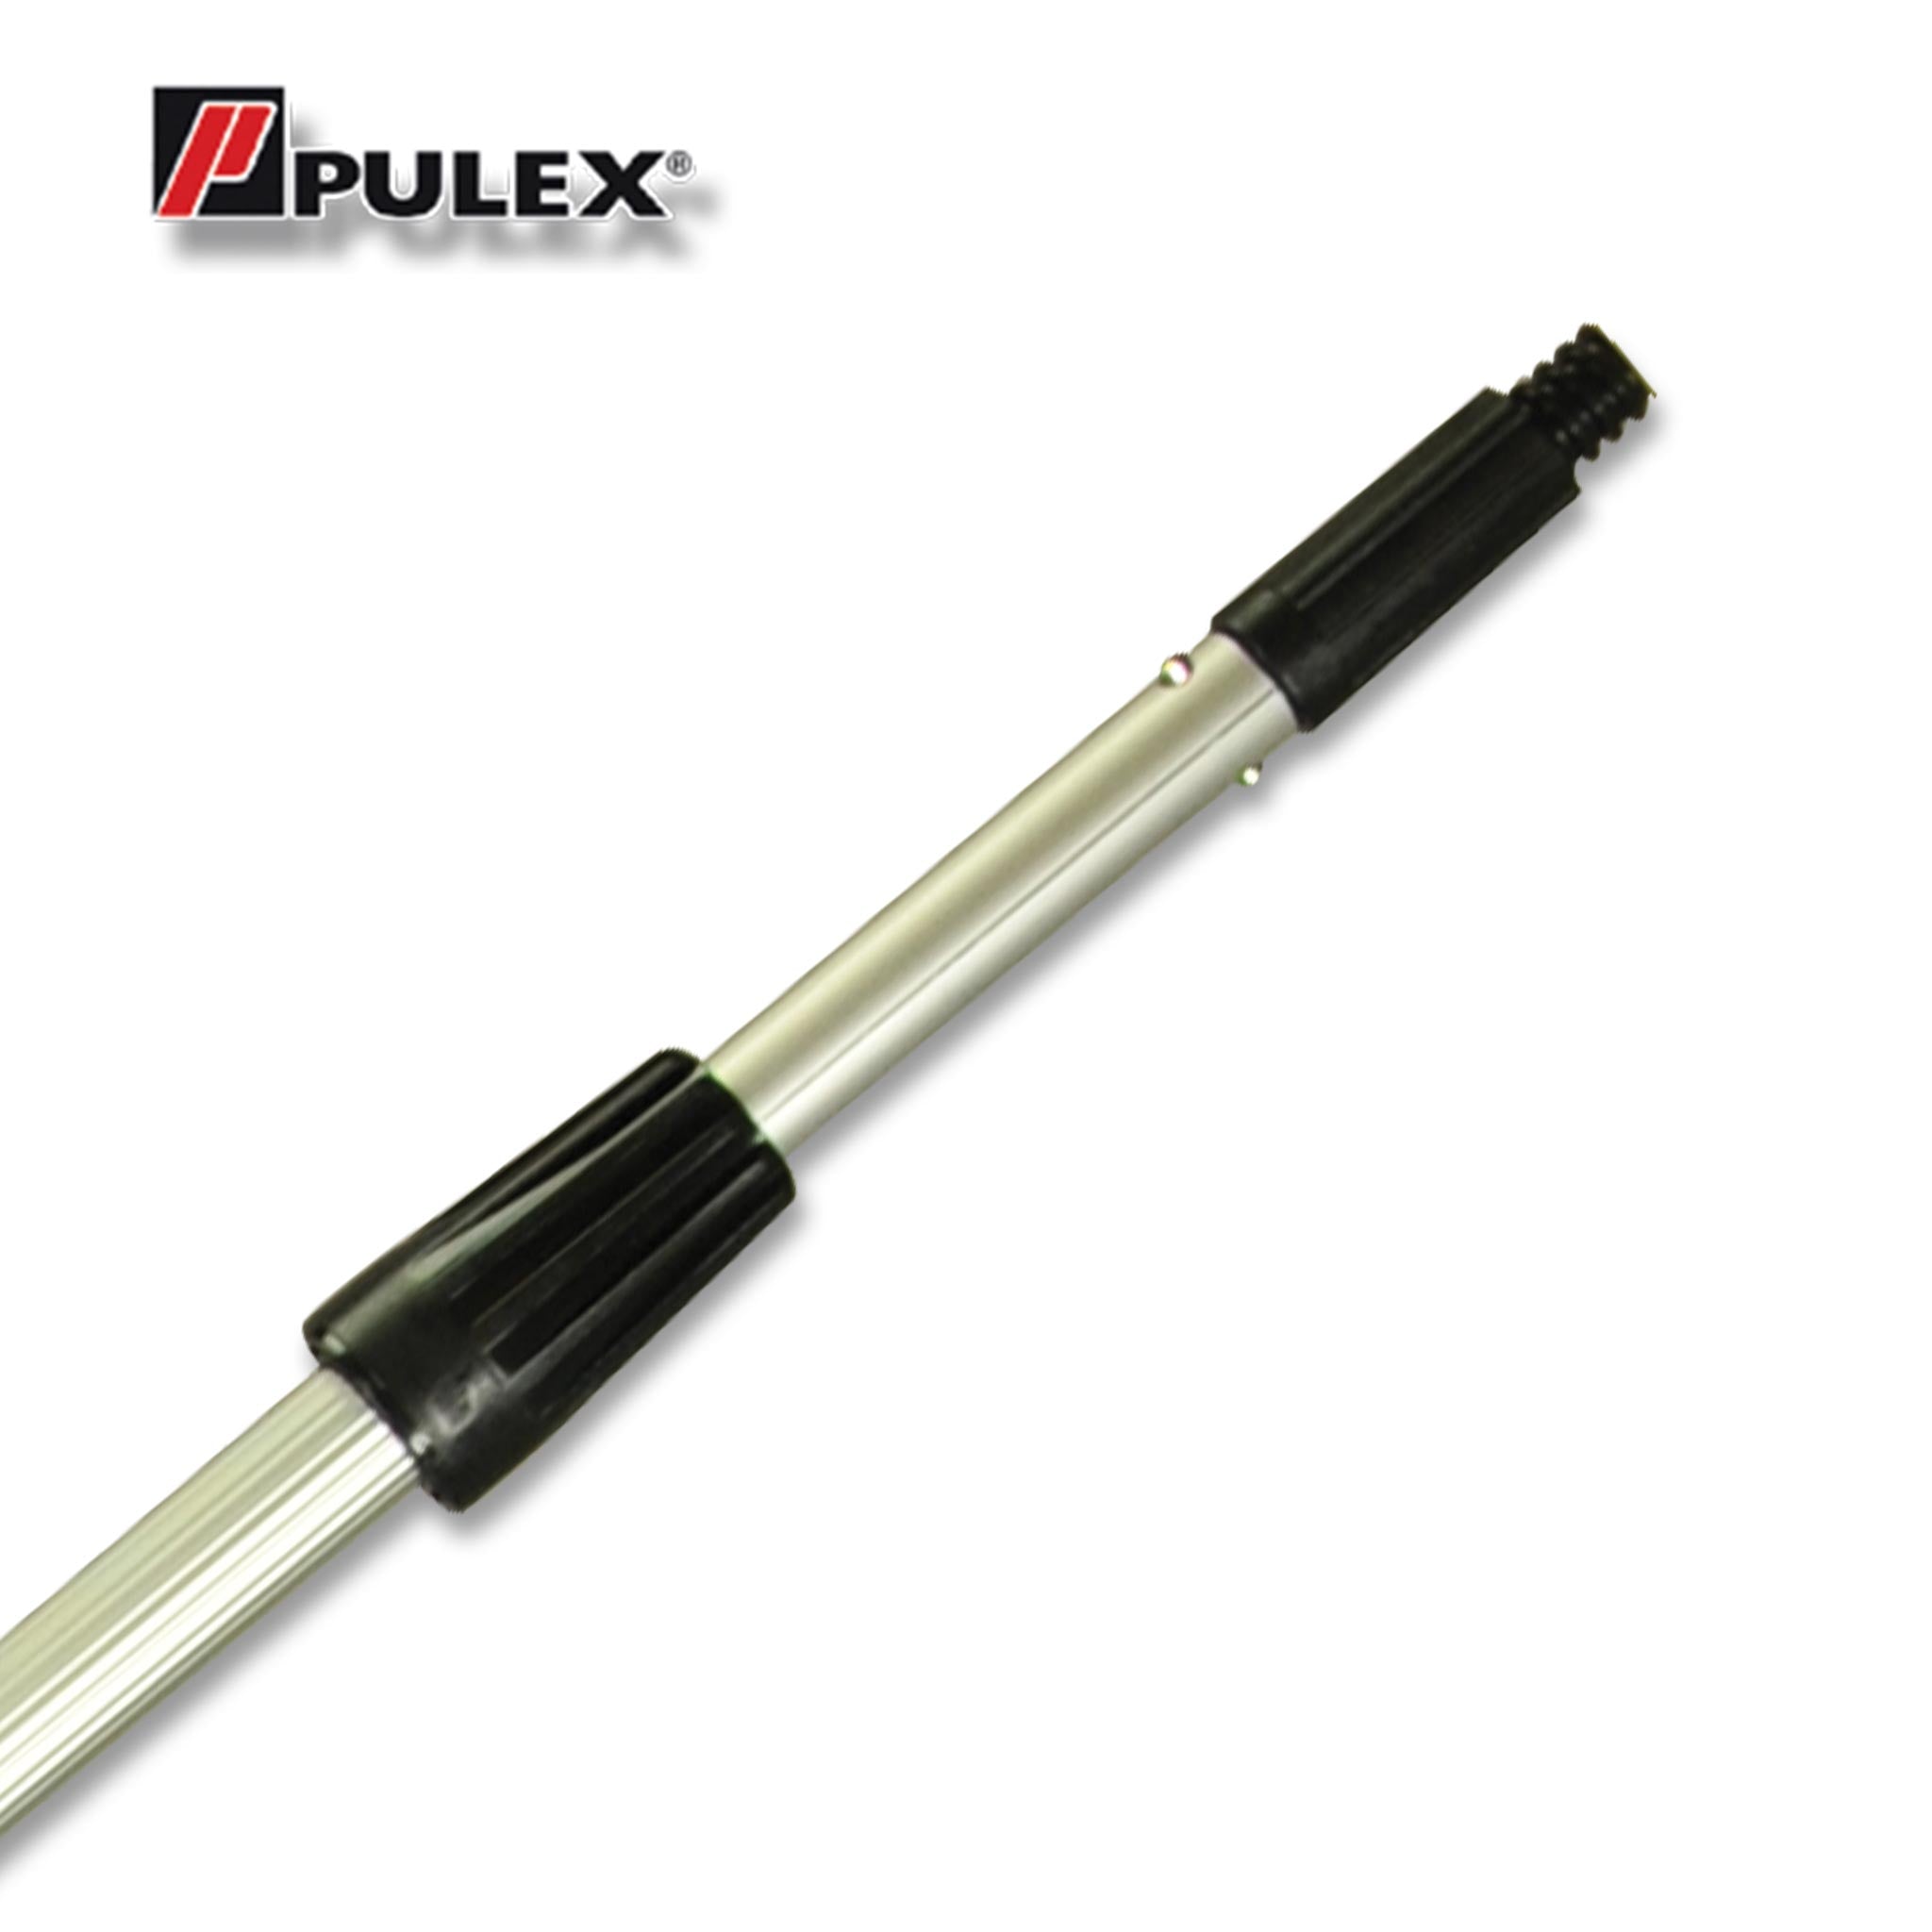 Pulex Alloy Extension Pole